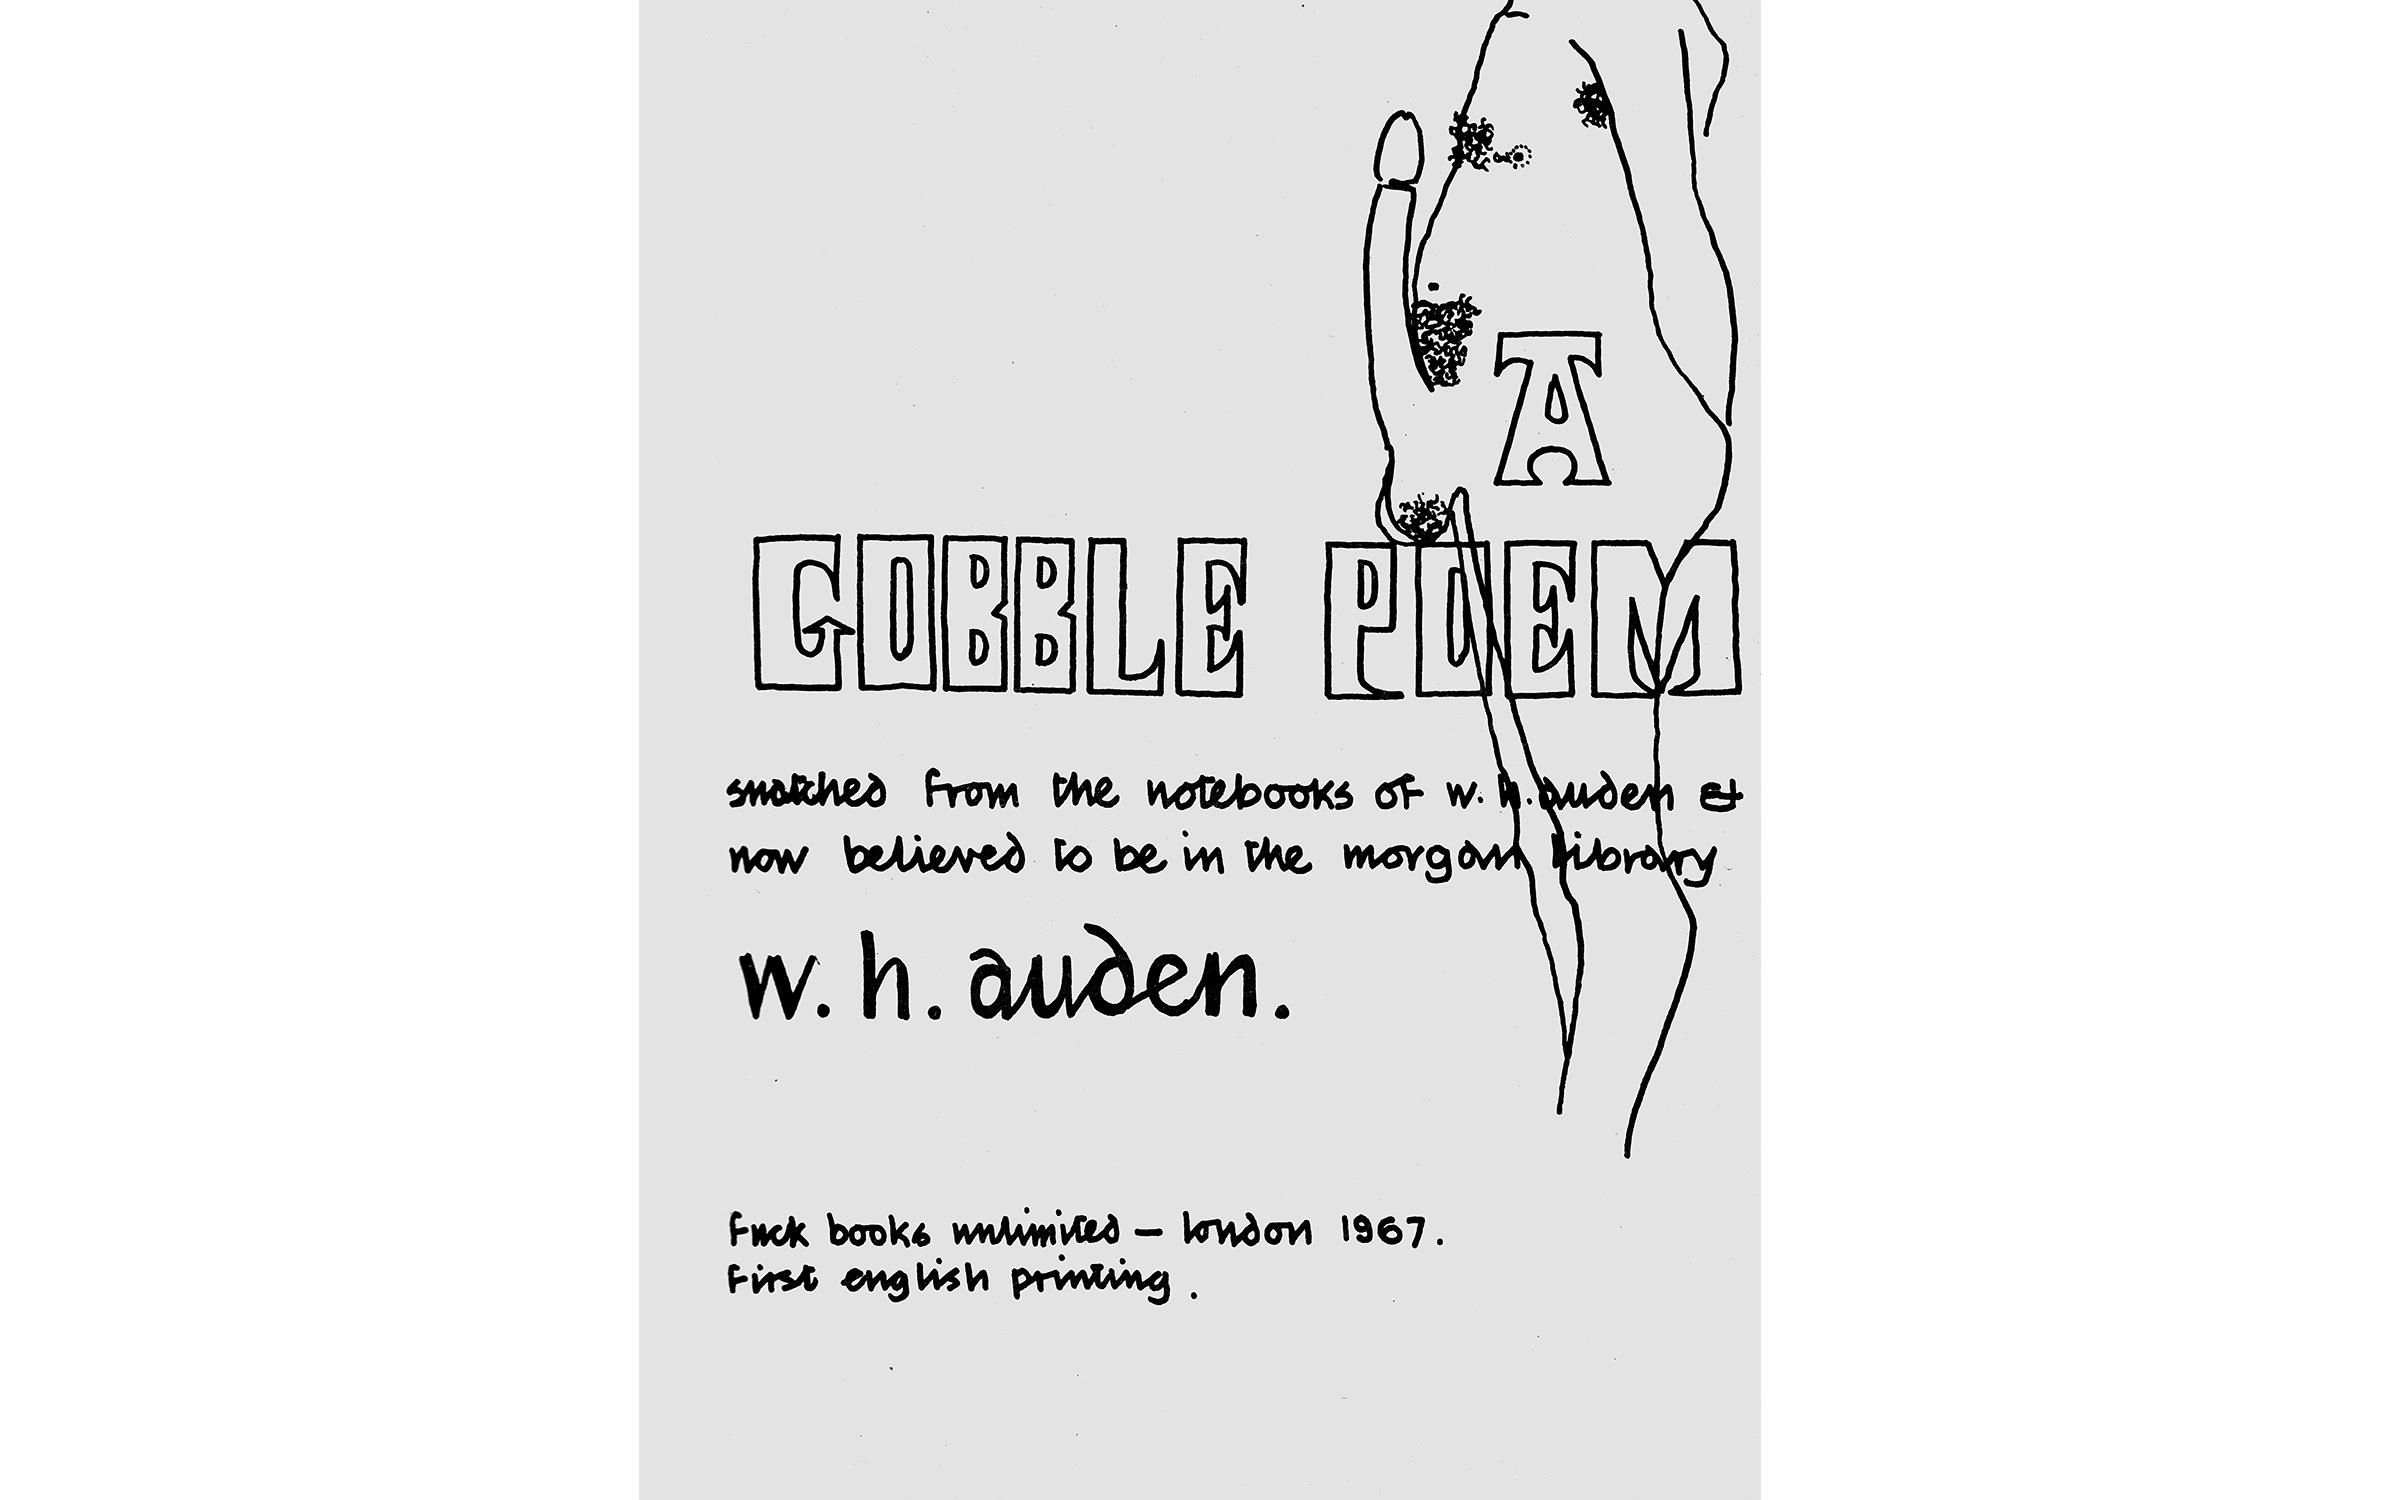 W.H. Auden, ‘The Gobble Poem’ (London: Fuck Books, 1967), p. 1.